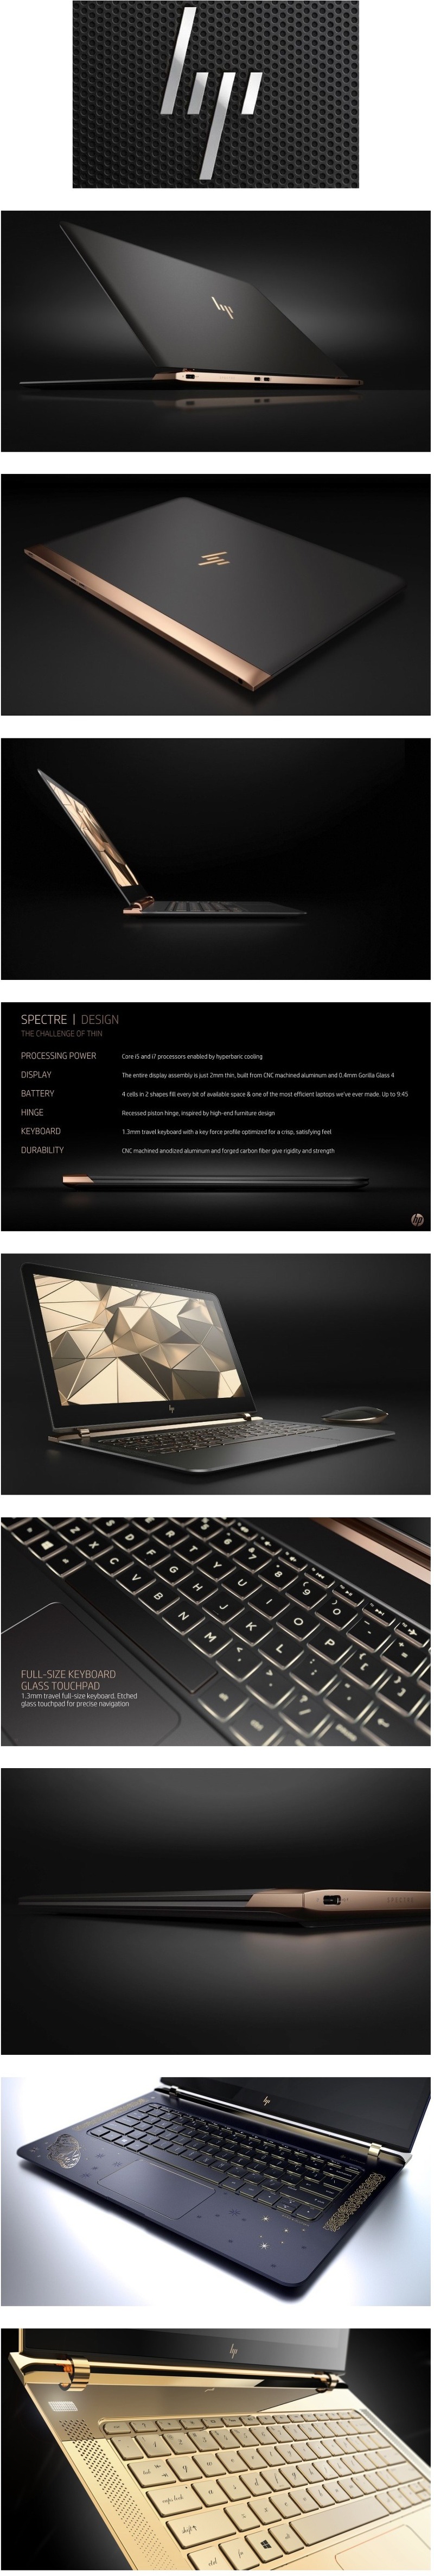 HP 신형 노트북 디자인